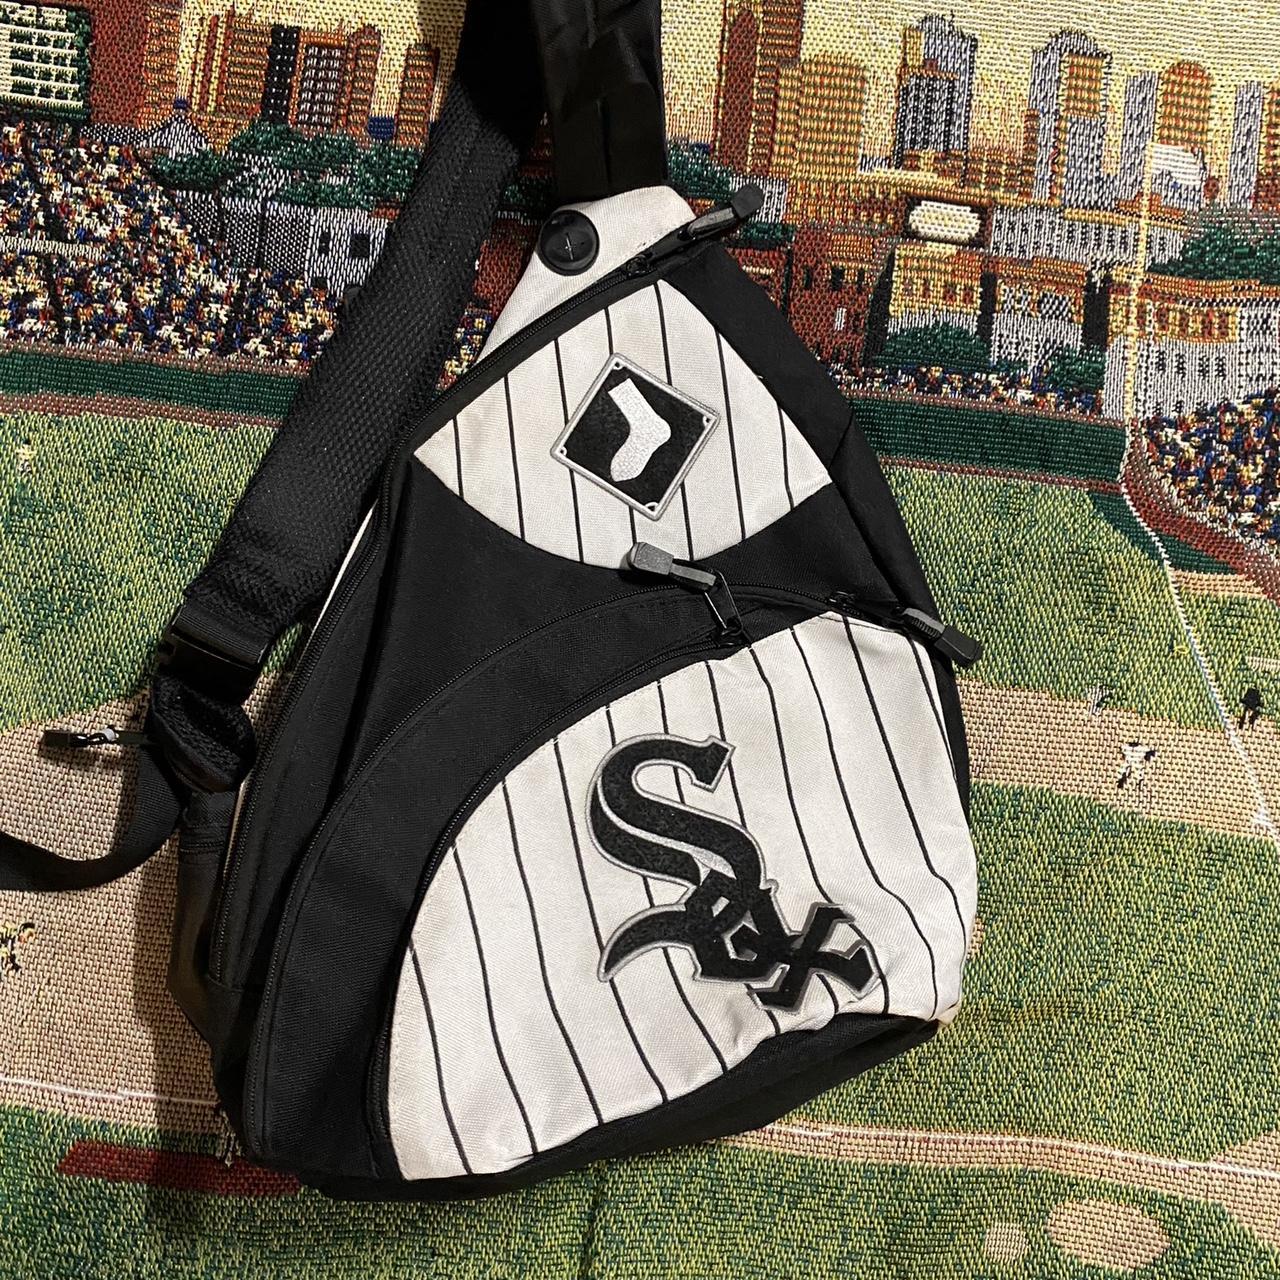 White Sox sling bag #White Sox #Bag #MLB #Slingbag